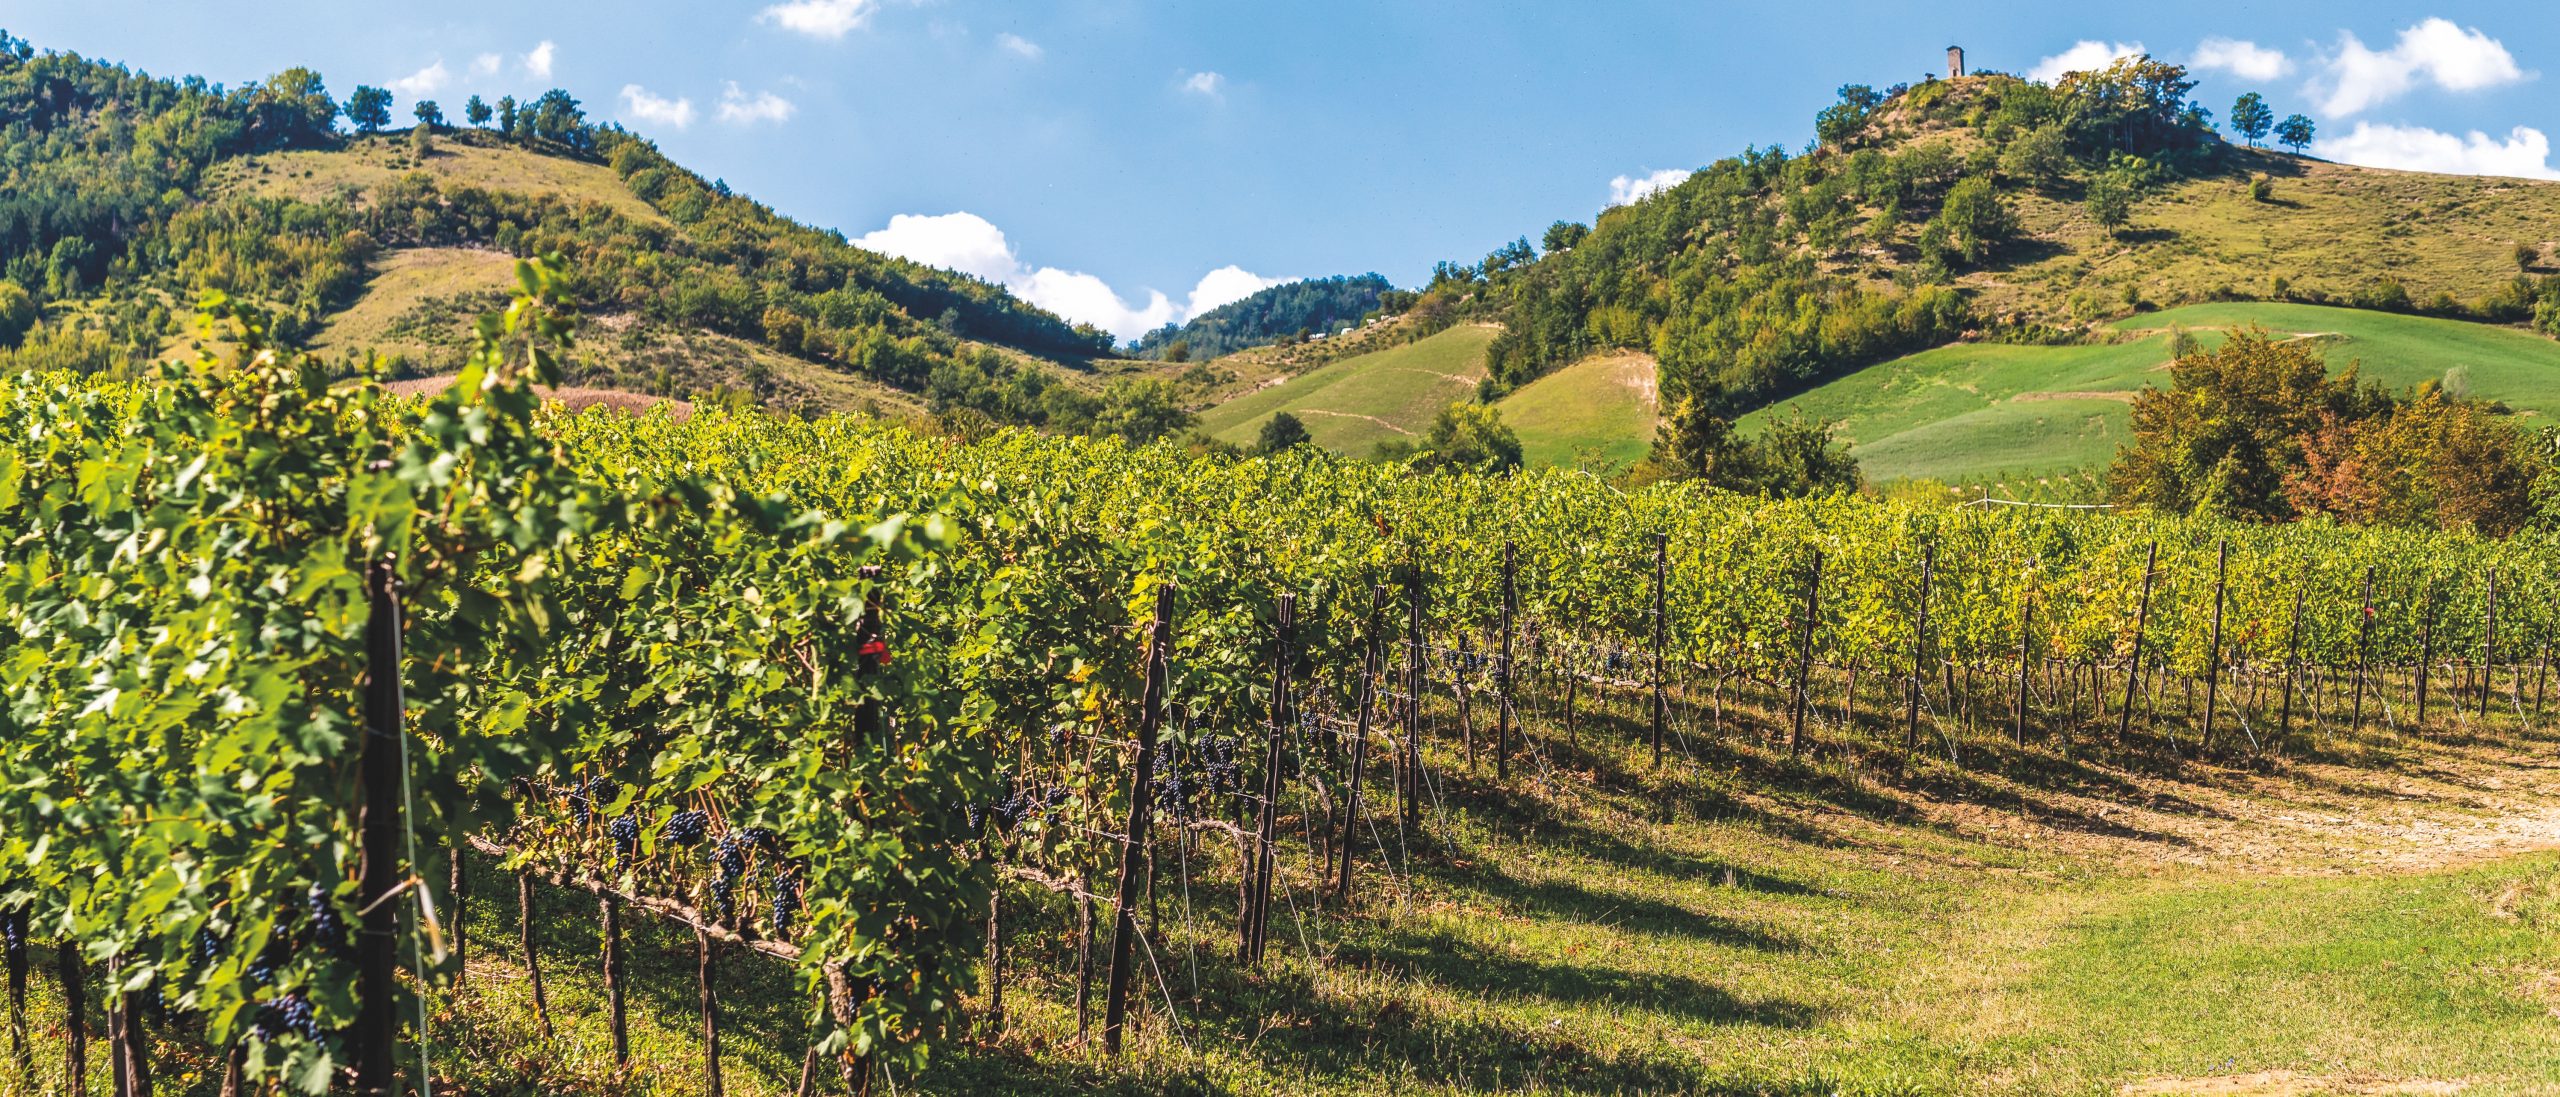 Vigneti e uve tra le colline del territorio per Caviro, la cantina d'Italia